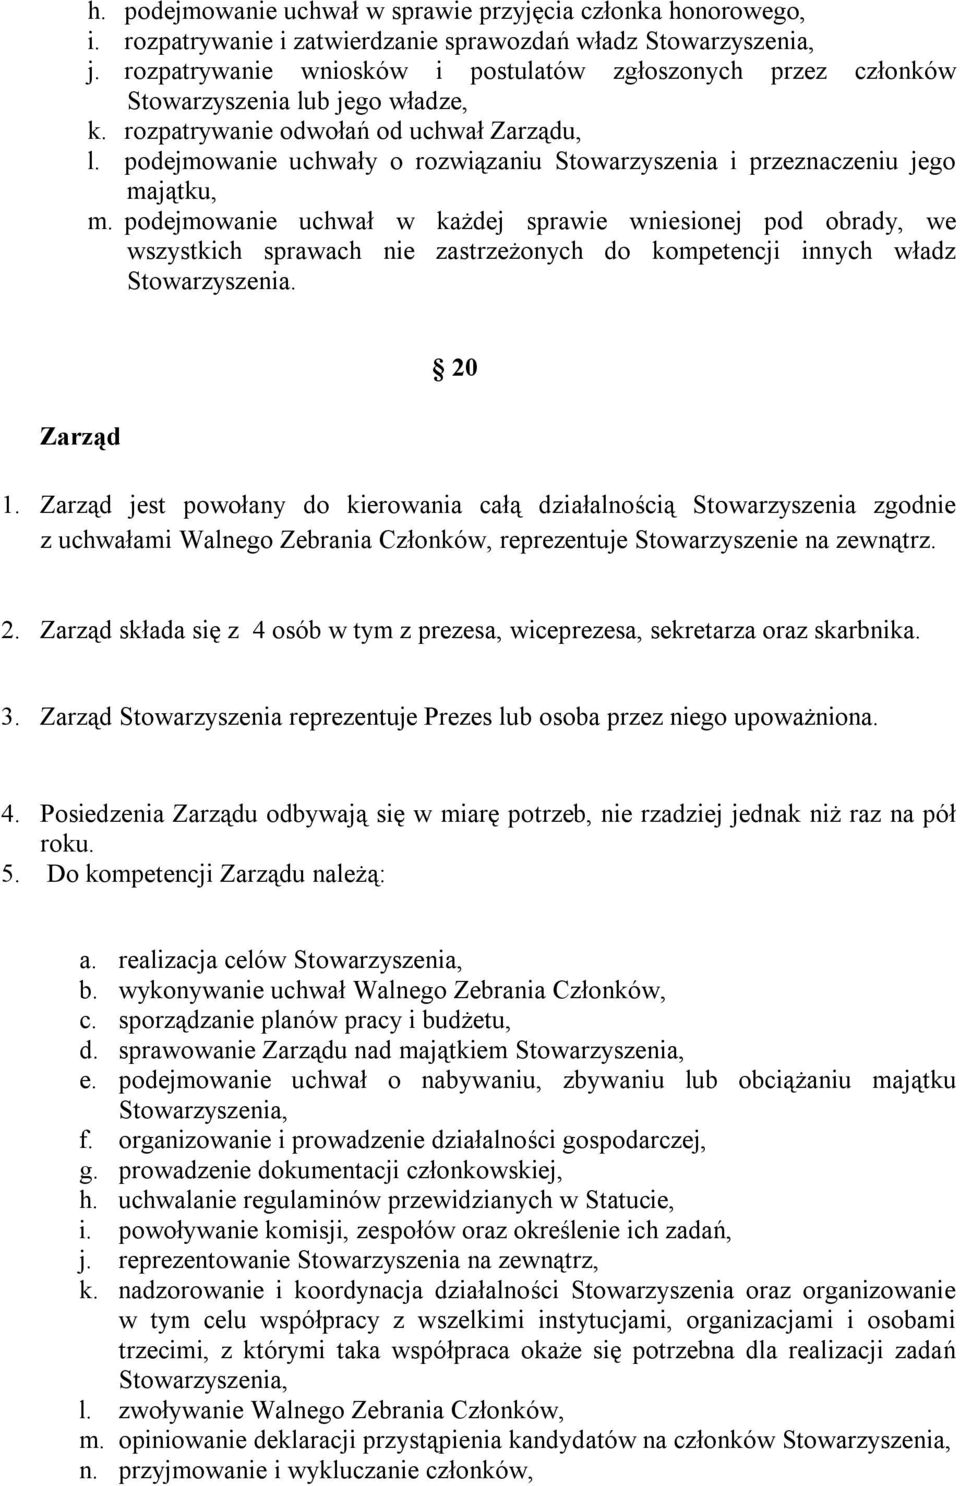 podejmowanie uchwały o rozwiązaniu Stowarzyszenia i przeznaczeniu jego majątku, m.